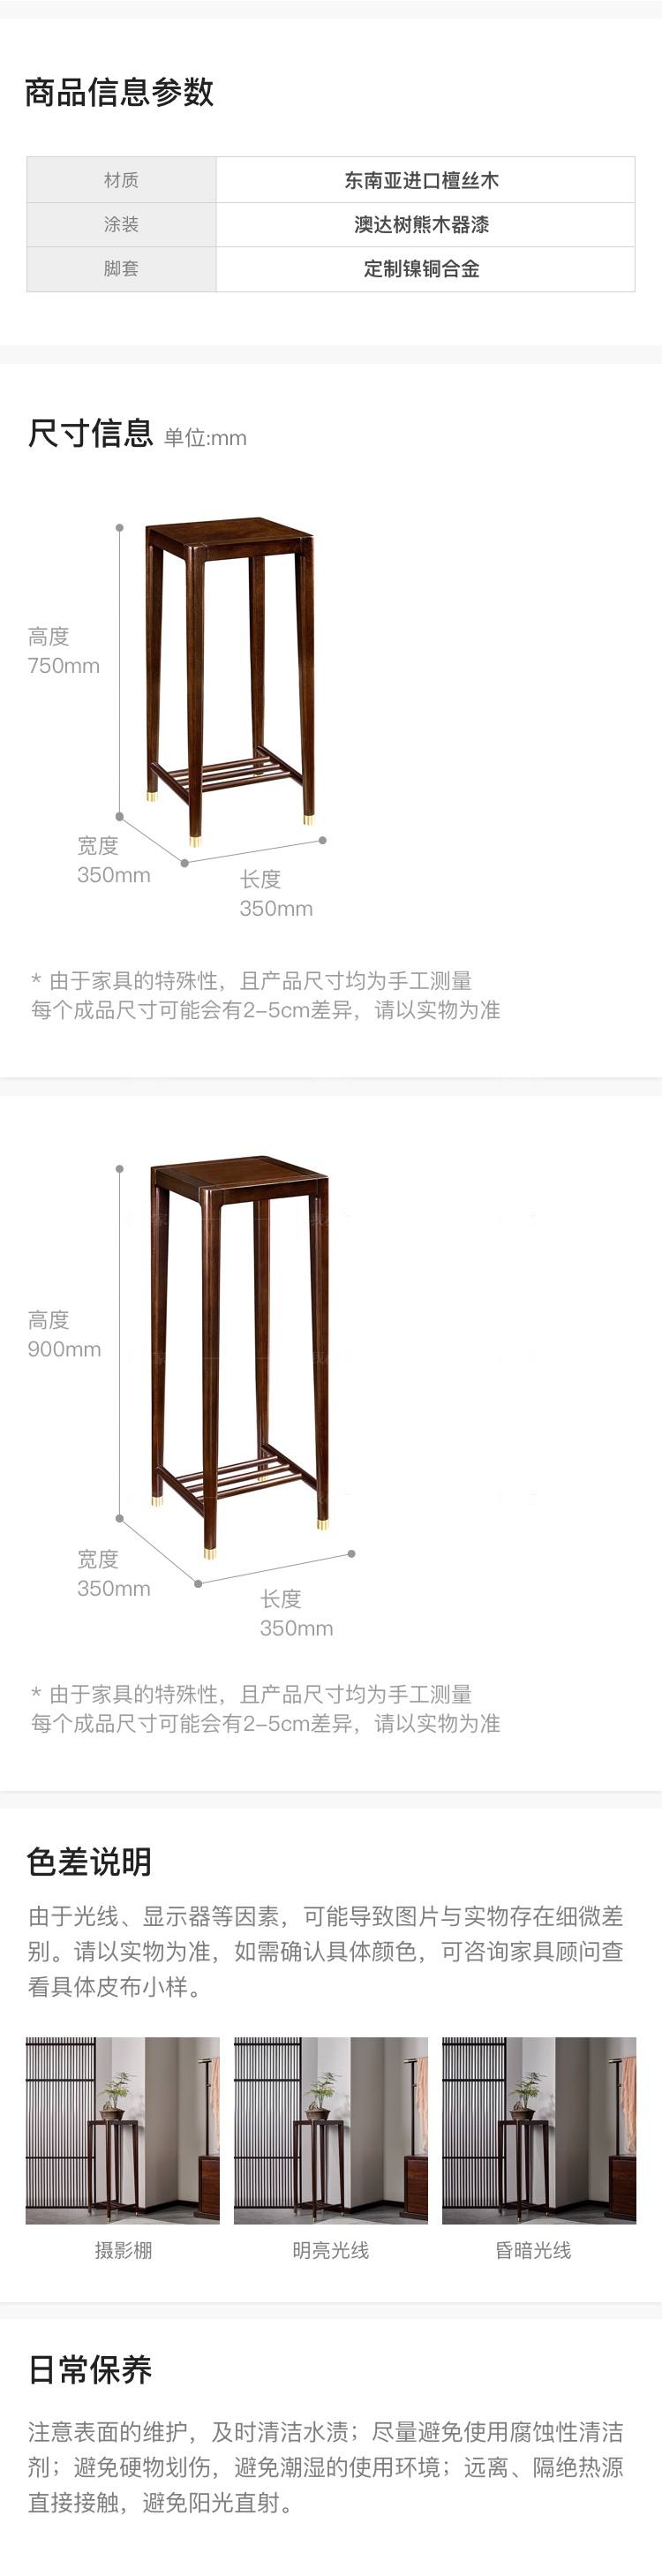 新中式风格似锦花架的家具详细介绍